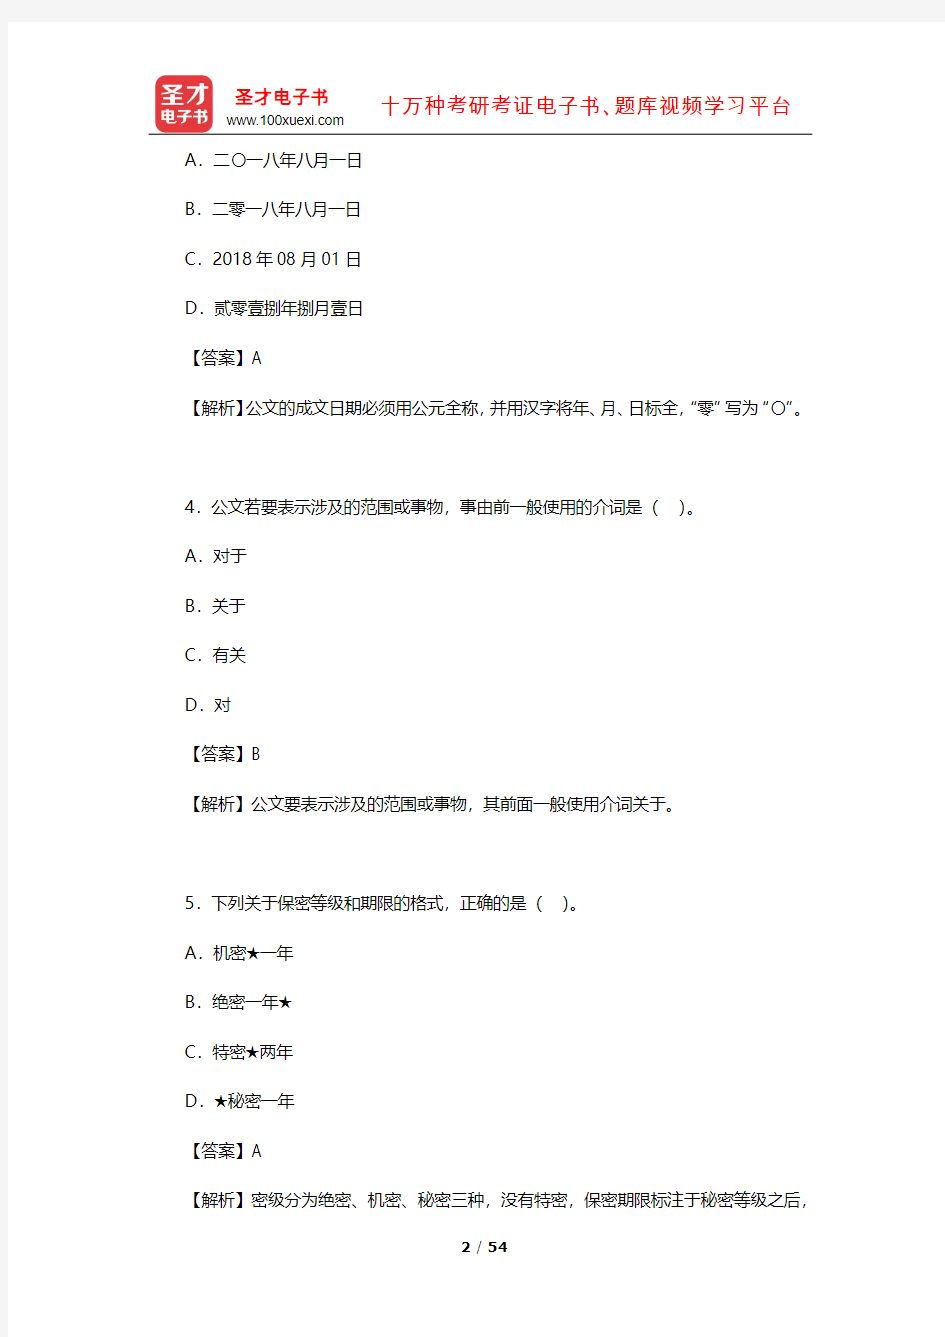 上海市社区工作者公开招聘考试《公共基础知识》 章节题库(公文写作常识)【圣才出品】